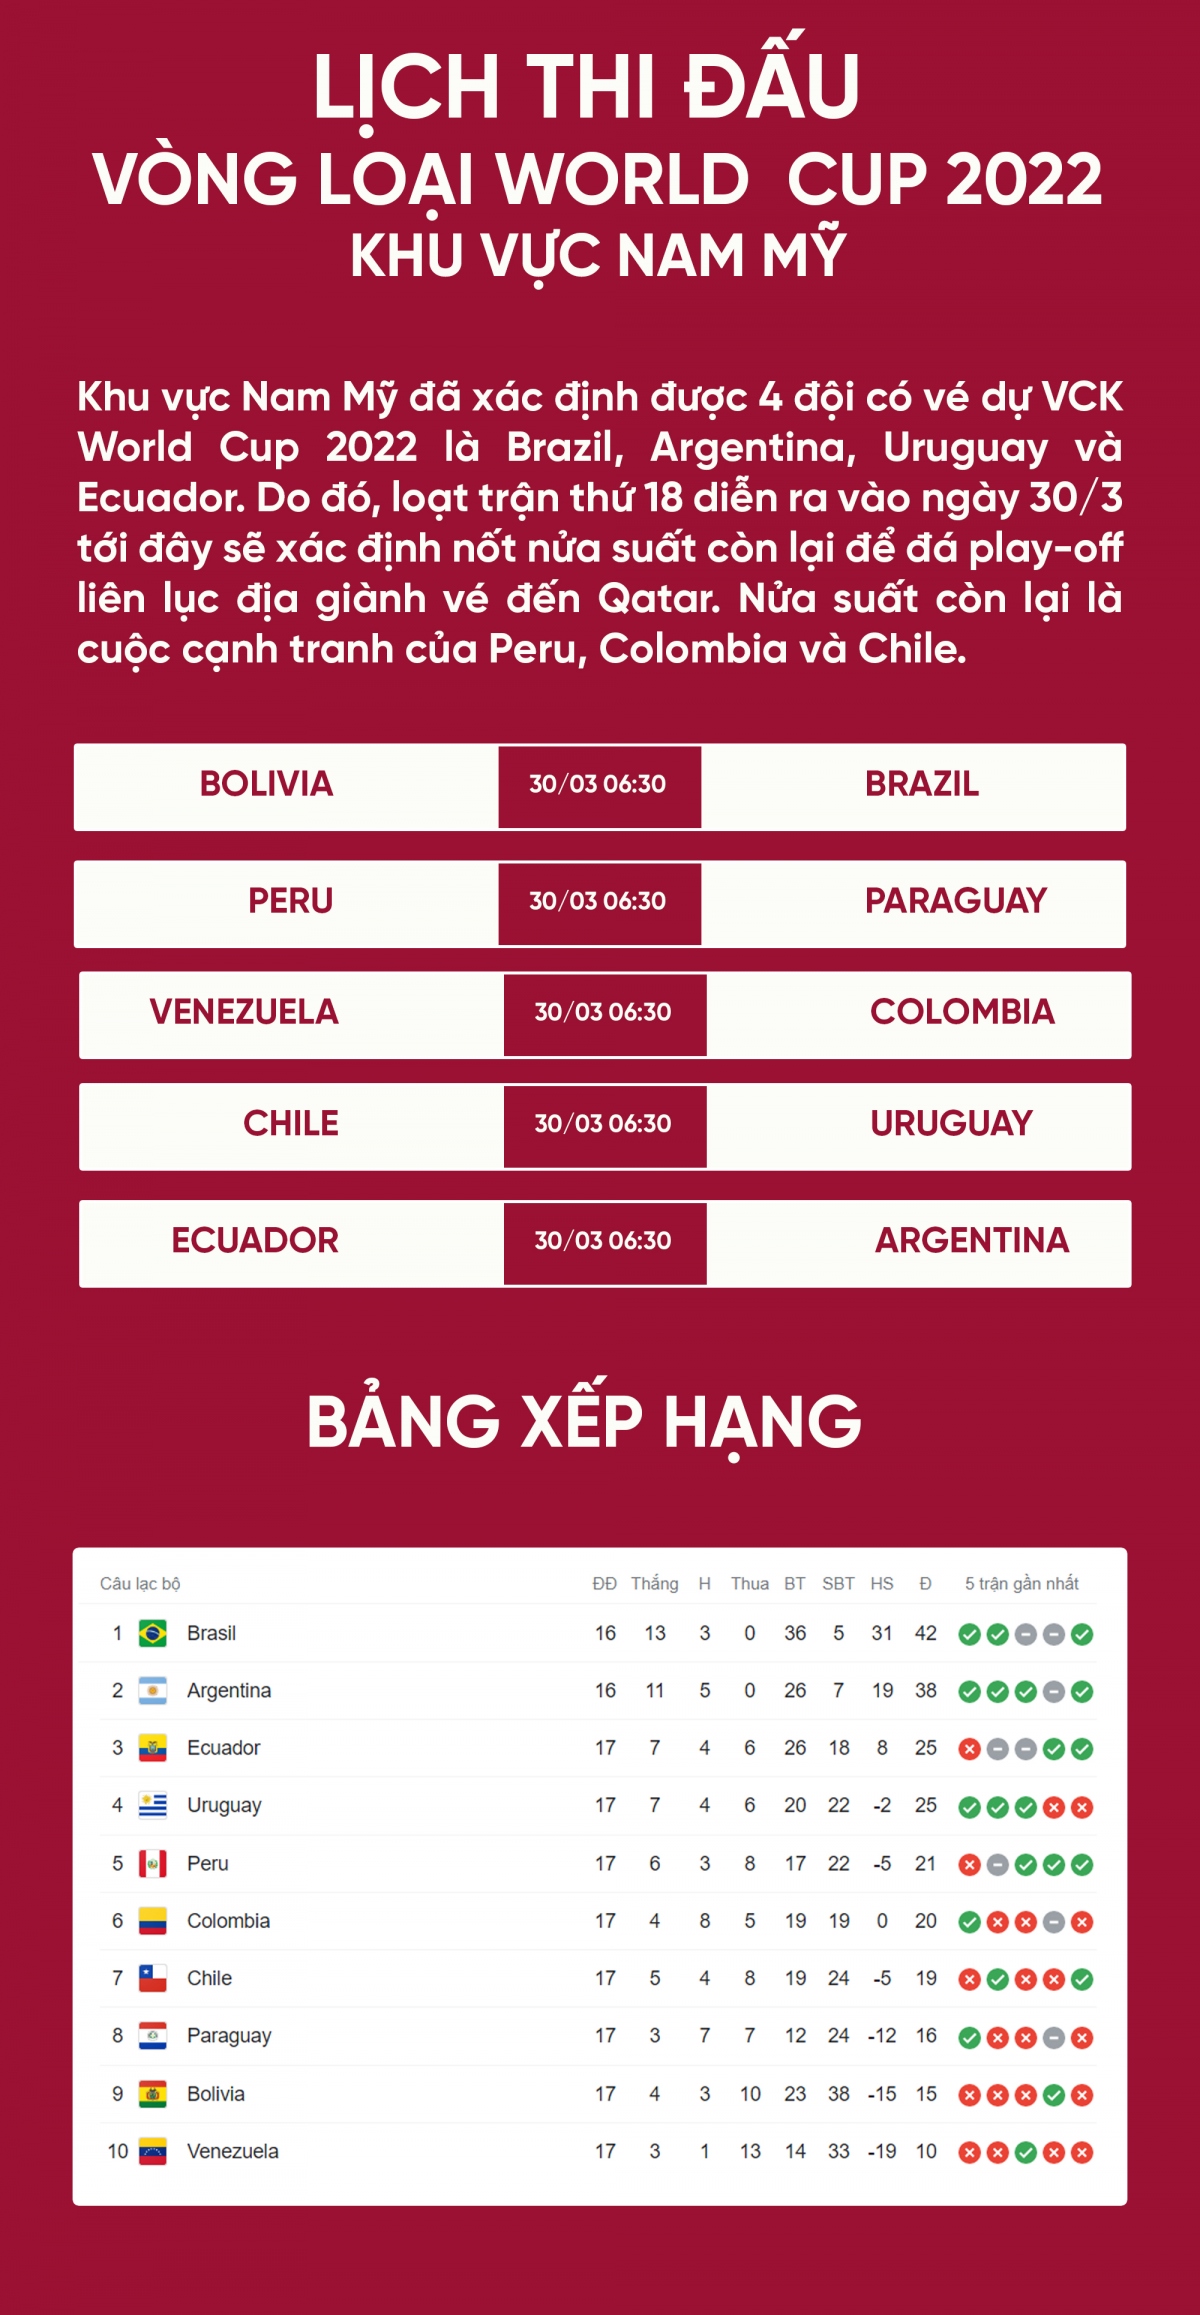 Lịch thi đấu vòng loại World Cup 2022 khu vực Nam Mỹ: Căng như dây ...